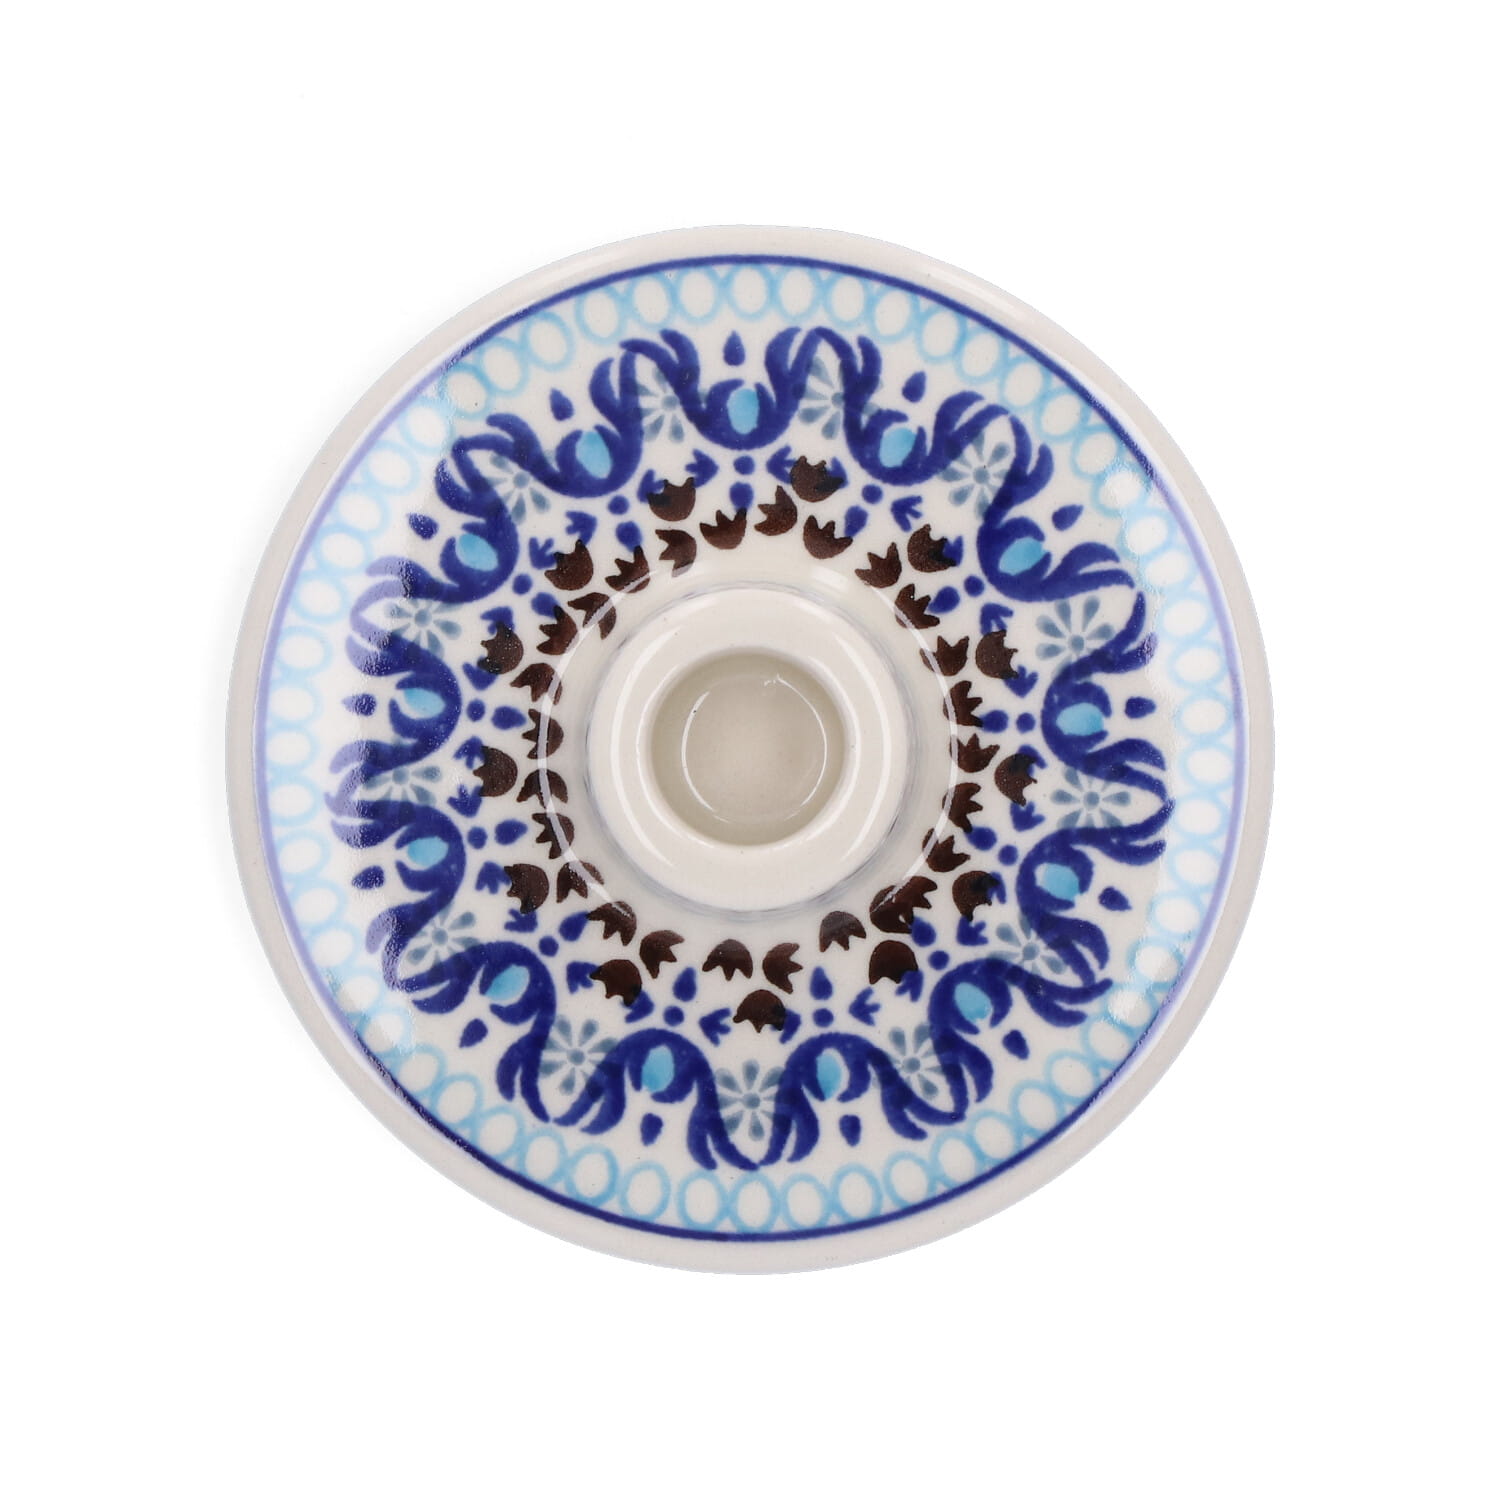 Bunzlau Castle Keramik Kerzenhalter - Marrakesh